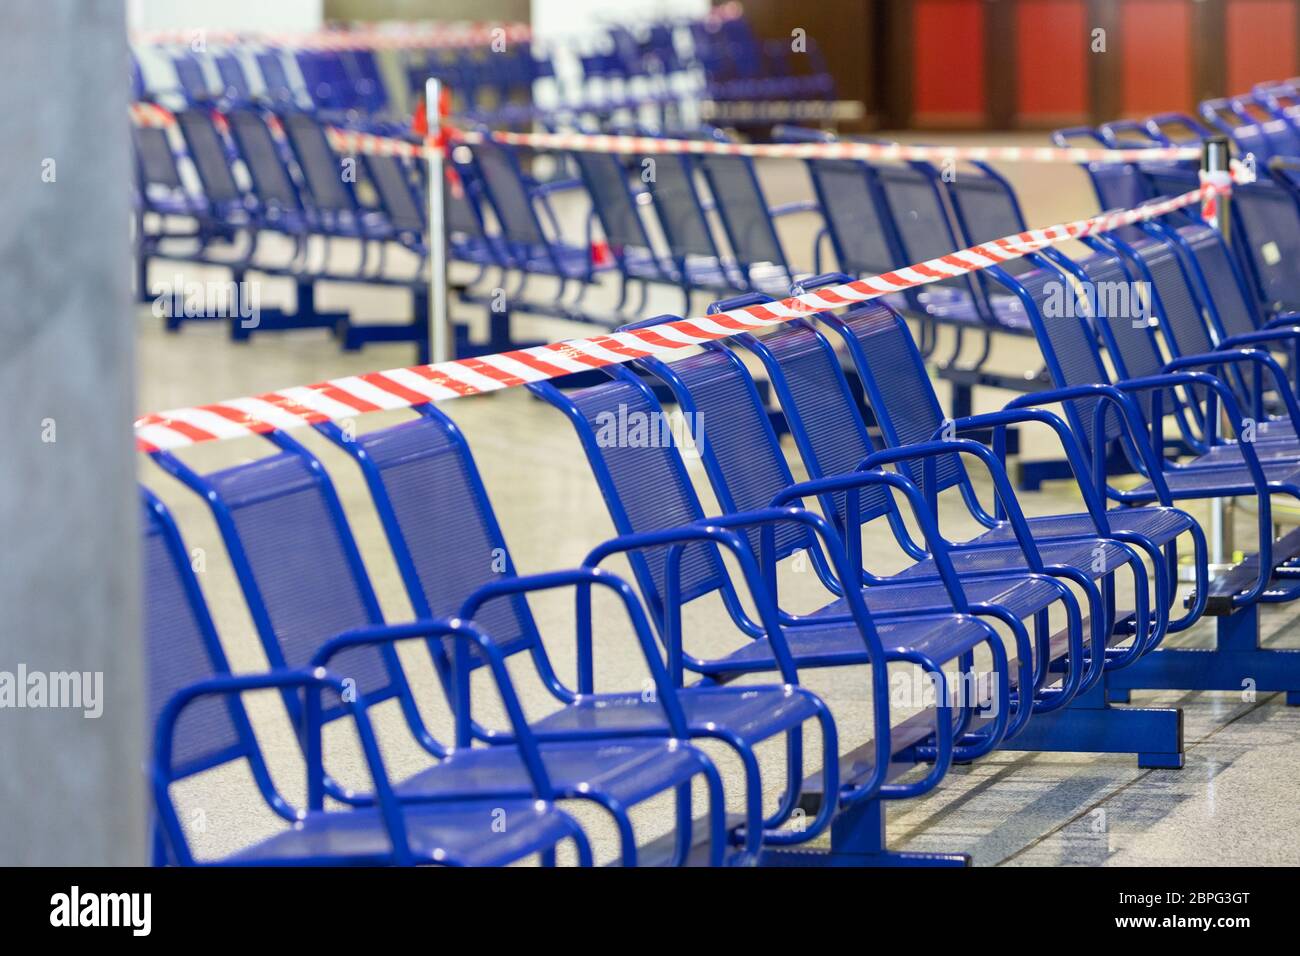 Dehntes Schutzband auf den Stühlen. Es ist verboten, während der Coronavirus-Pandemie auf öffentlichen Plätzen zu sitzen, um die Menschen vor Infektionen zu schützen. Stockfoto